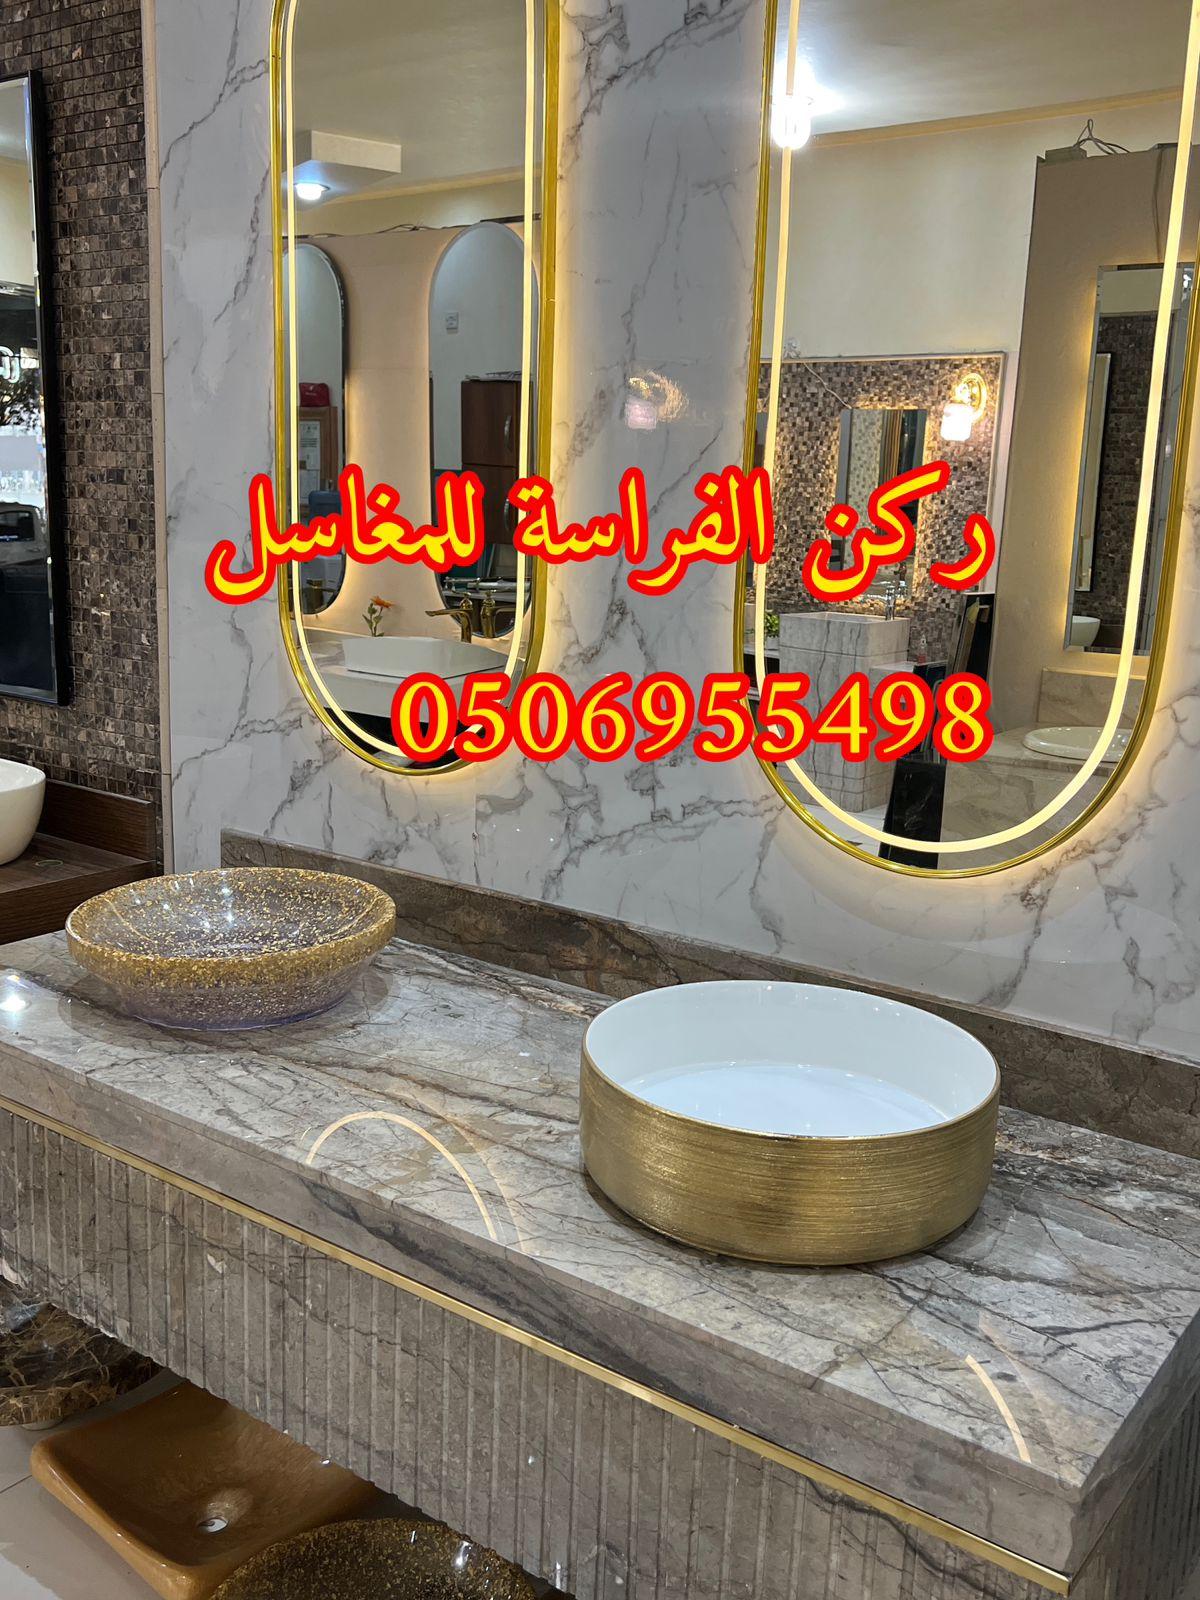 تصاميم مغاسل رخام للمجالس في الرياض,0506955498 919516311